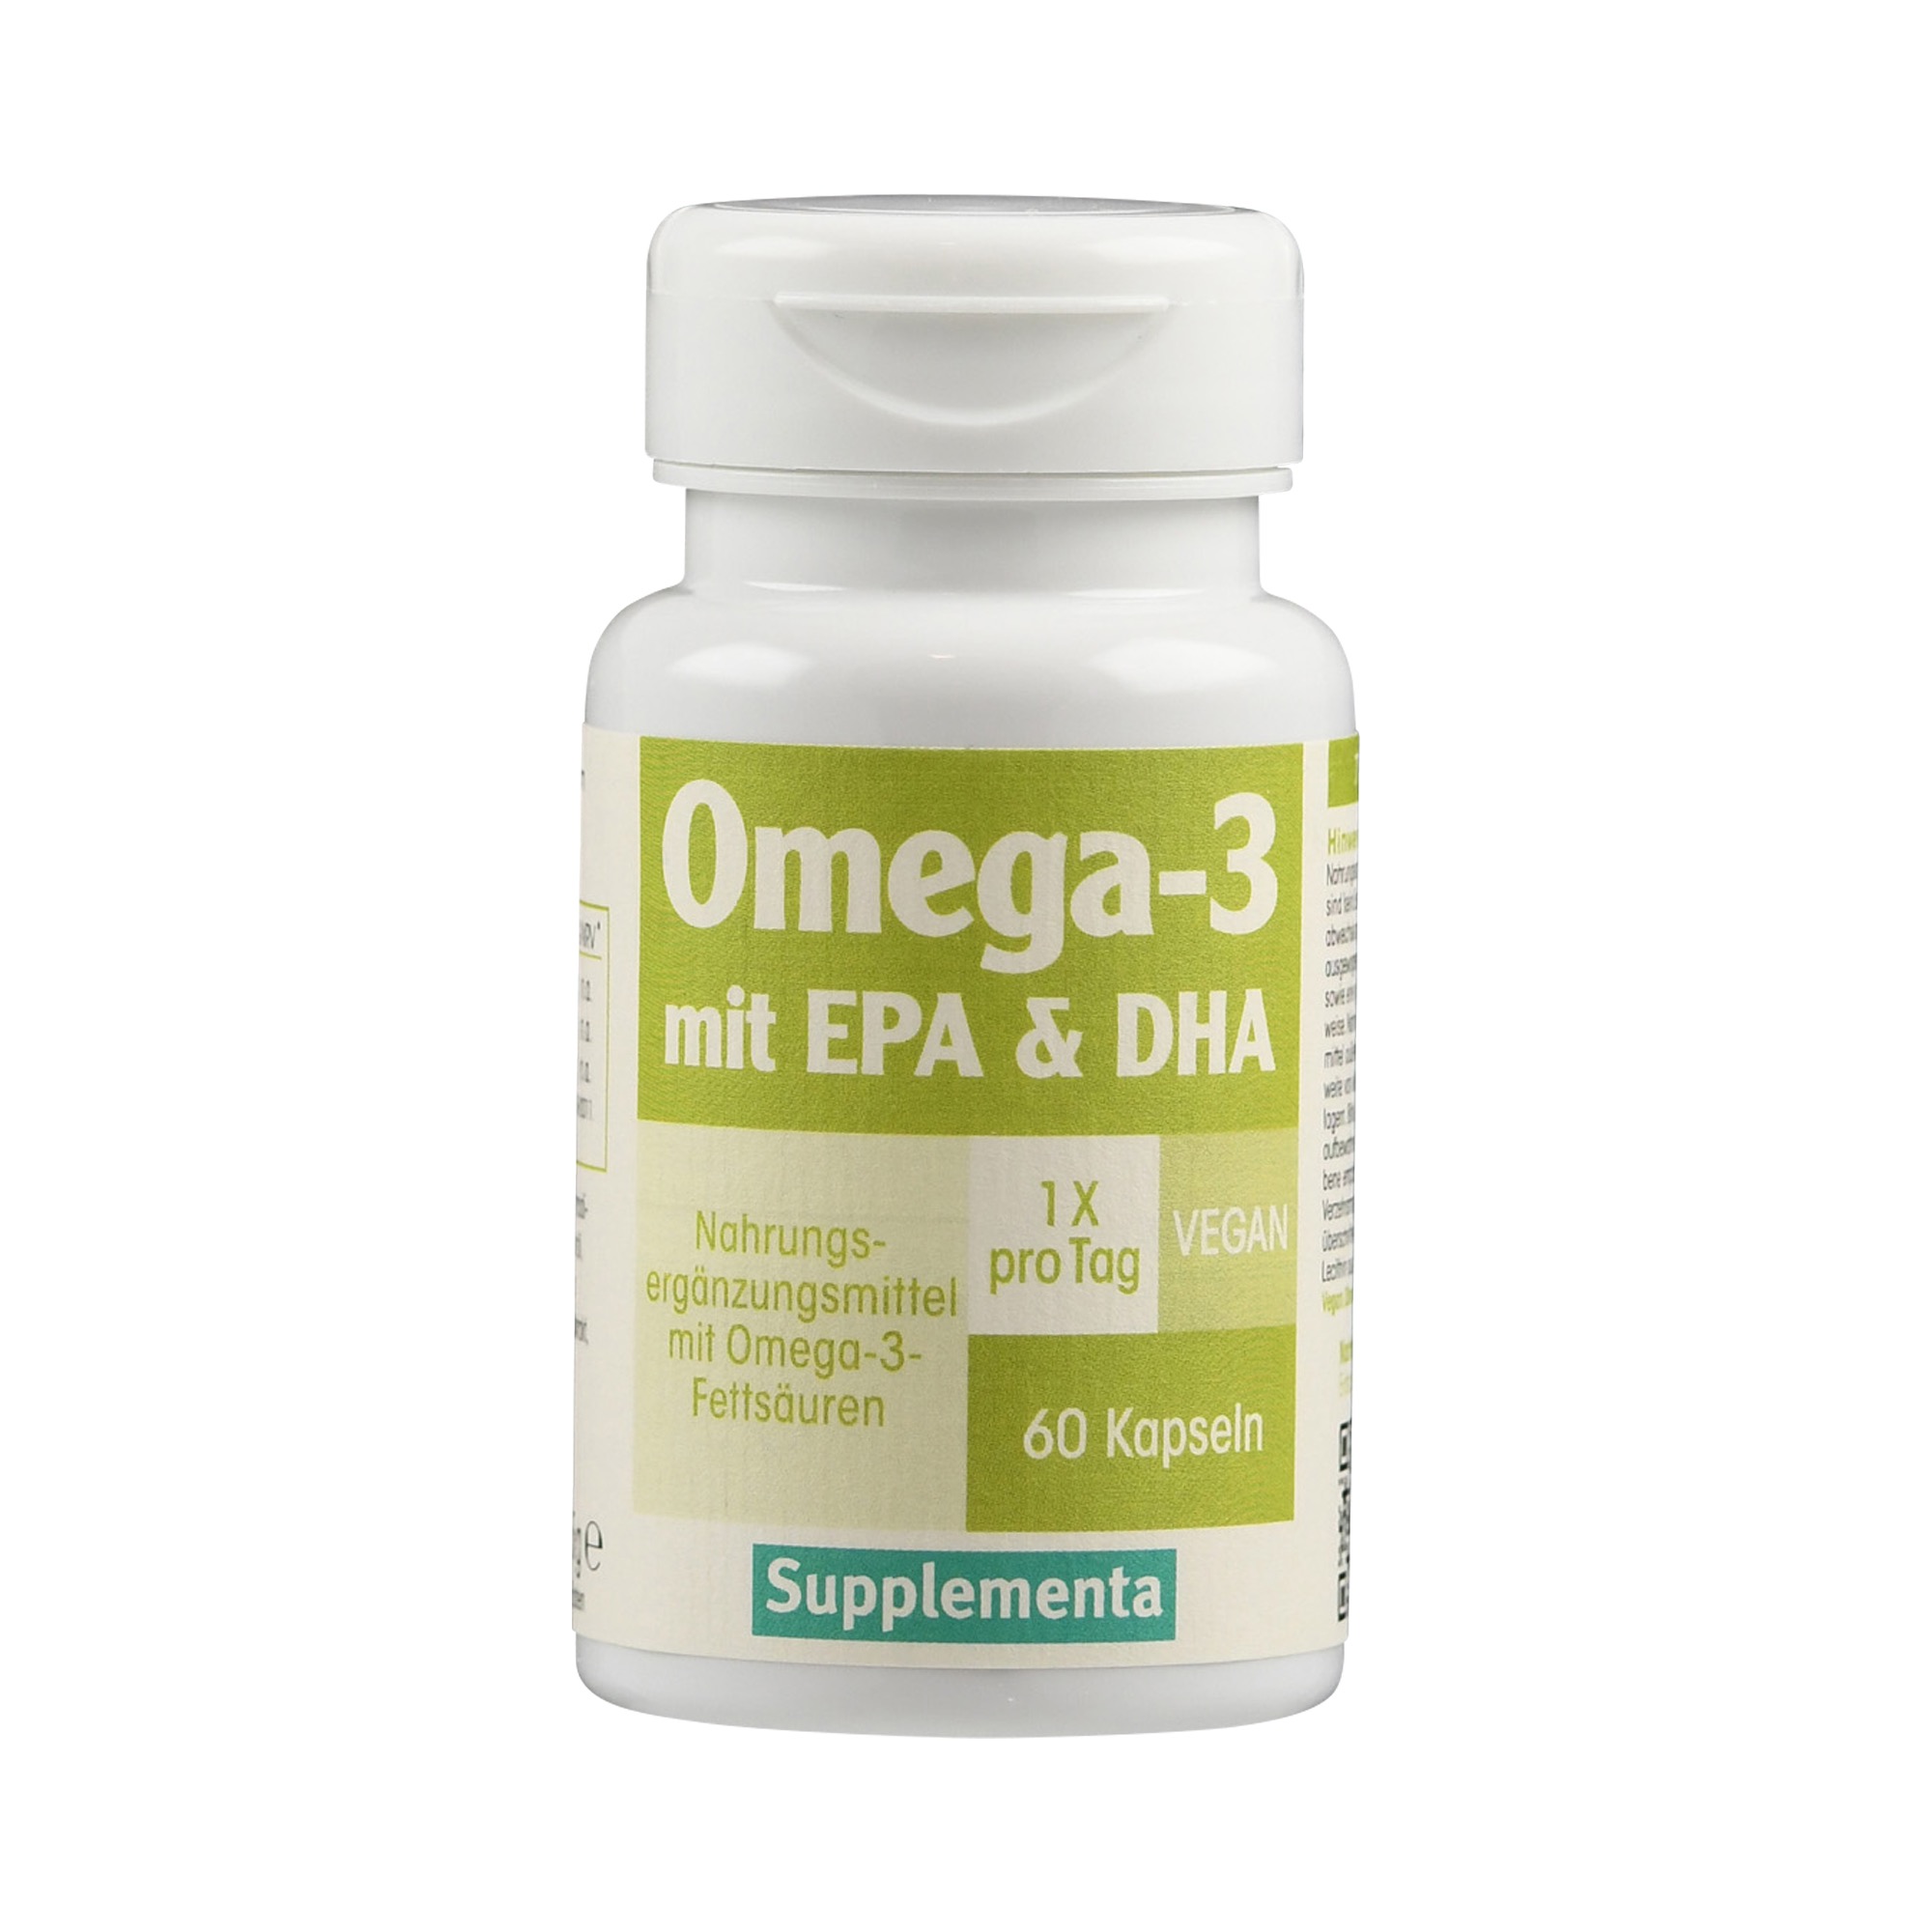 Omega-3 vegan mit EPA & DHA